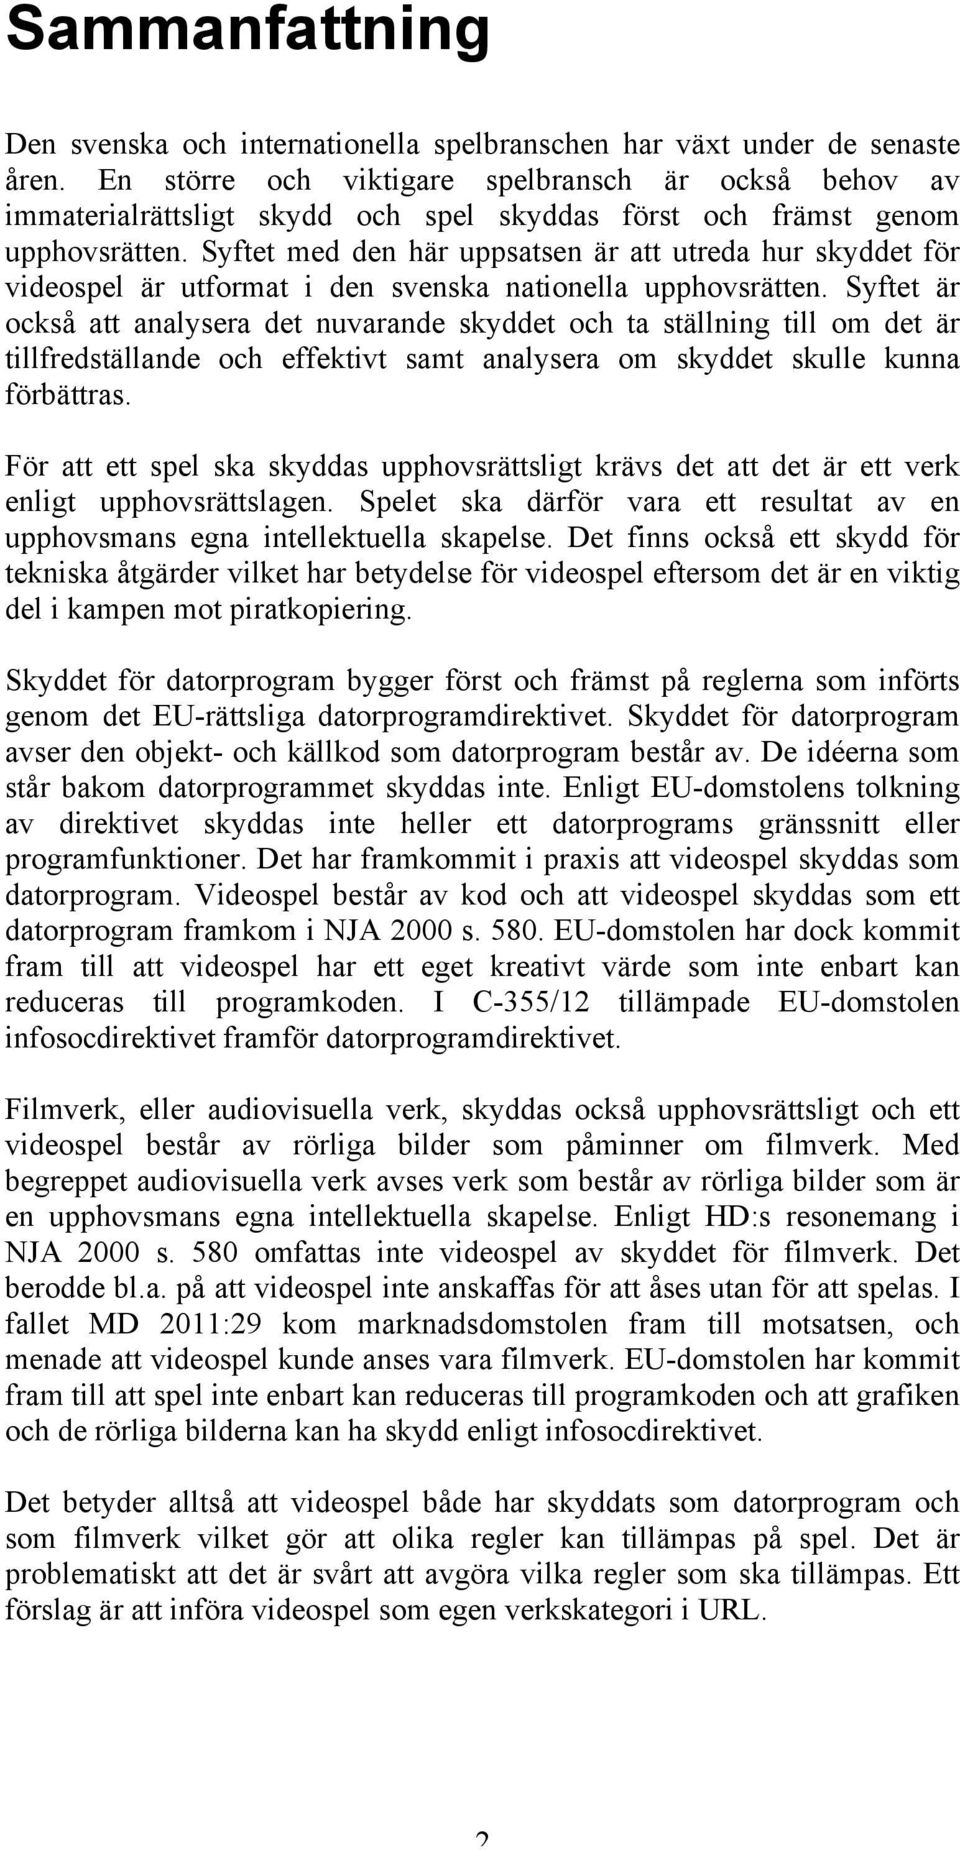 Syftet med den här uppsatsen är att utreda hur skyddet för videospel är utformat i den svenska nationella upphovsrätten.